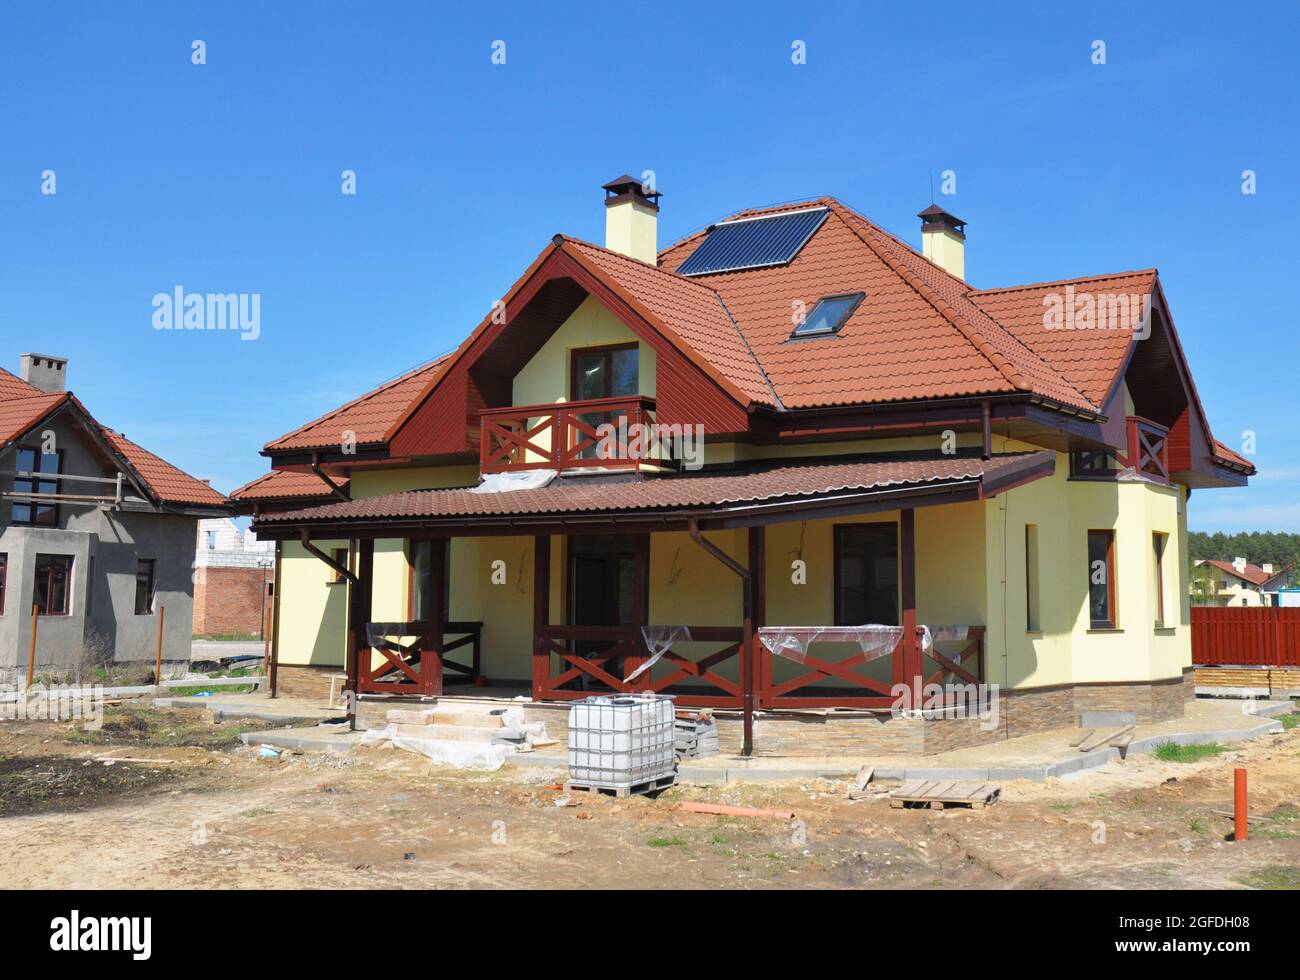 Der Bau eines energieeffizienten Hauses mit einem komplexen Kreuzgiebel Dach mit Blitzschutz und Tonfliesen, Blitzableiter, Terrasse, Stuck w Stockfoto